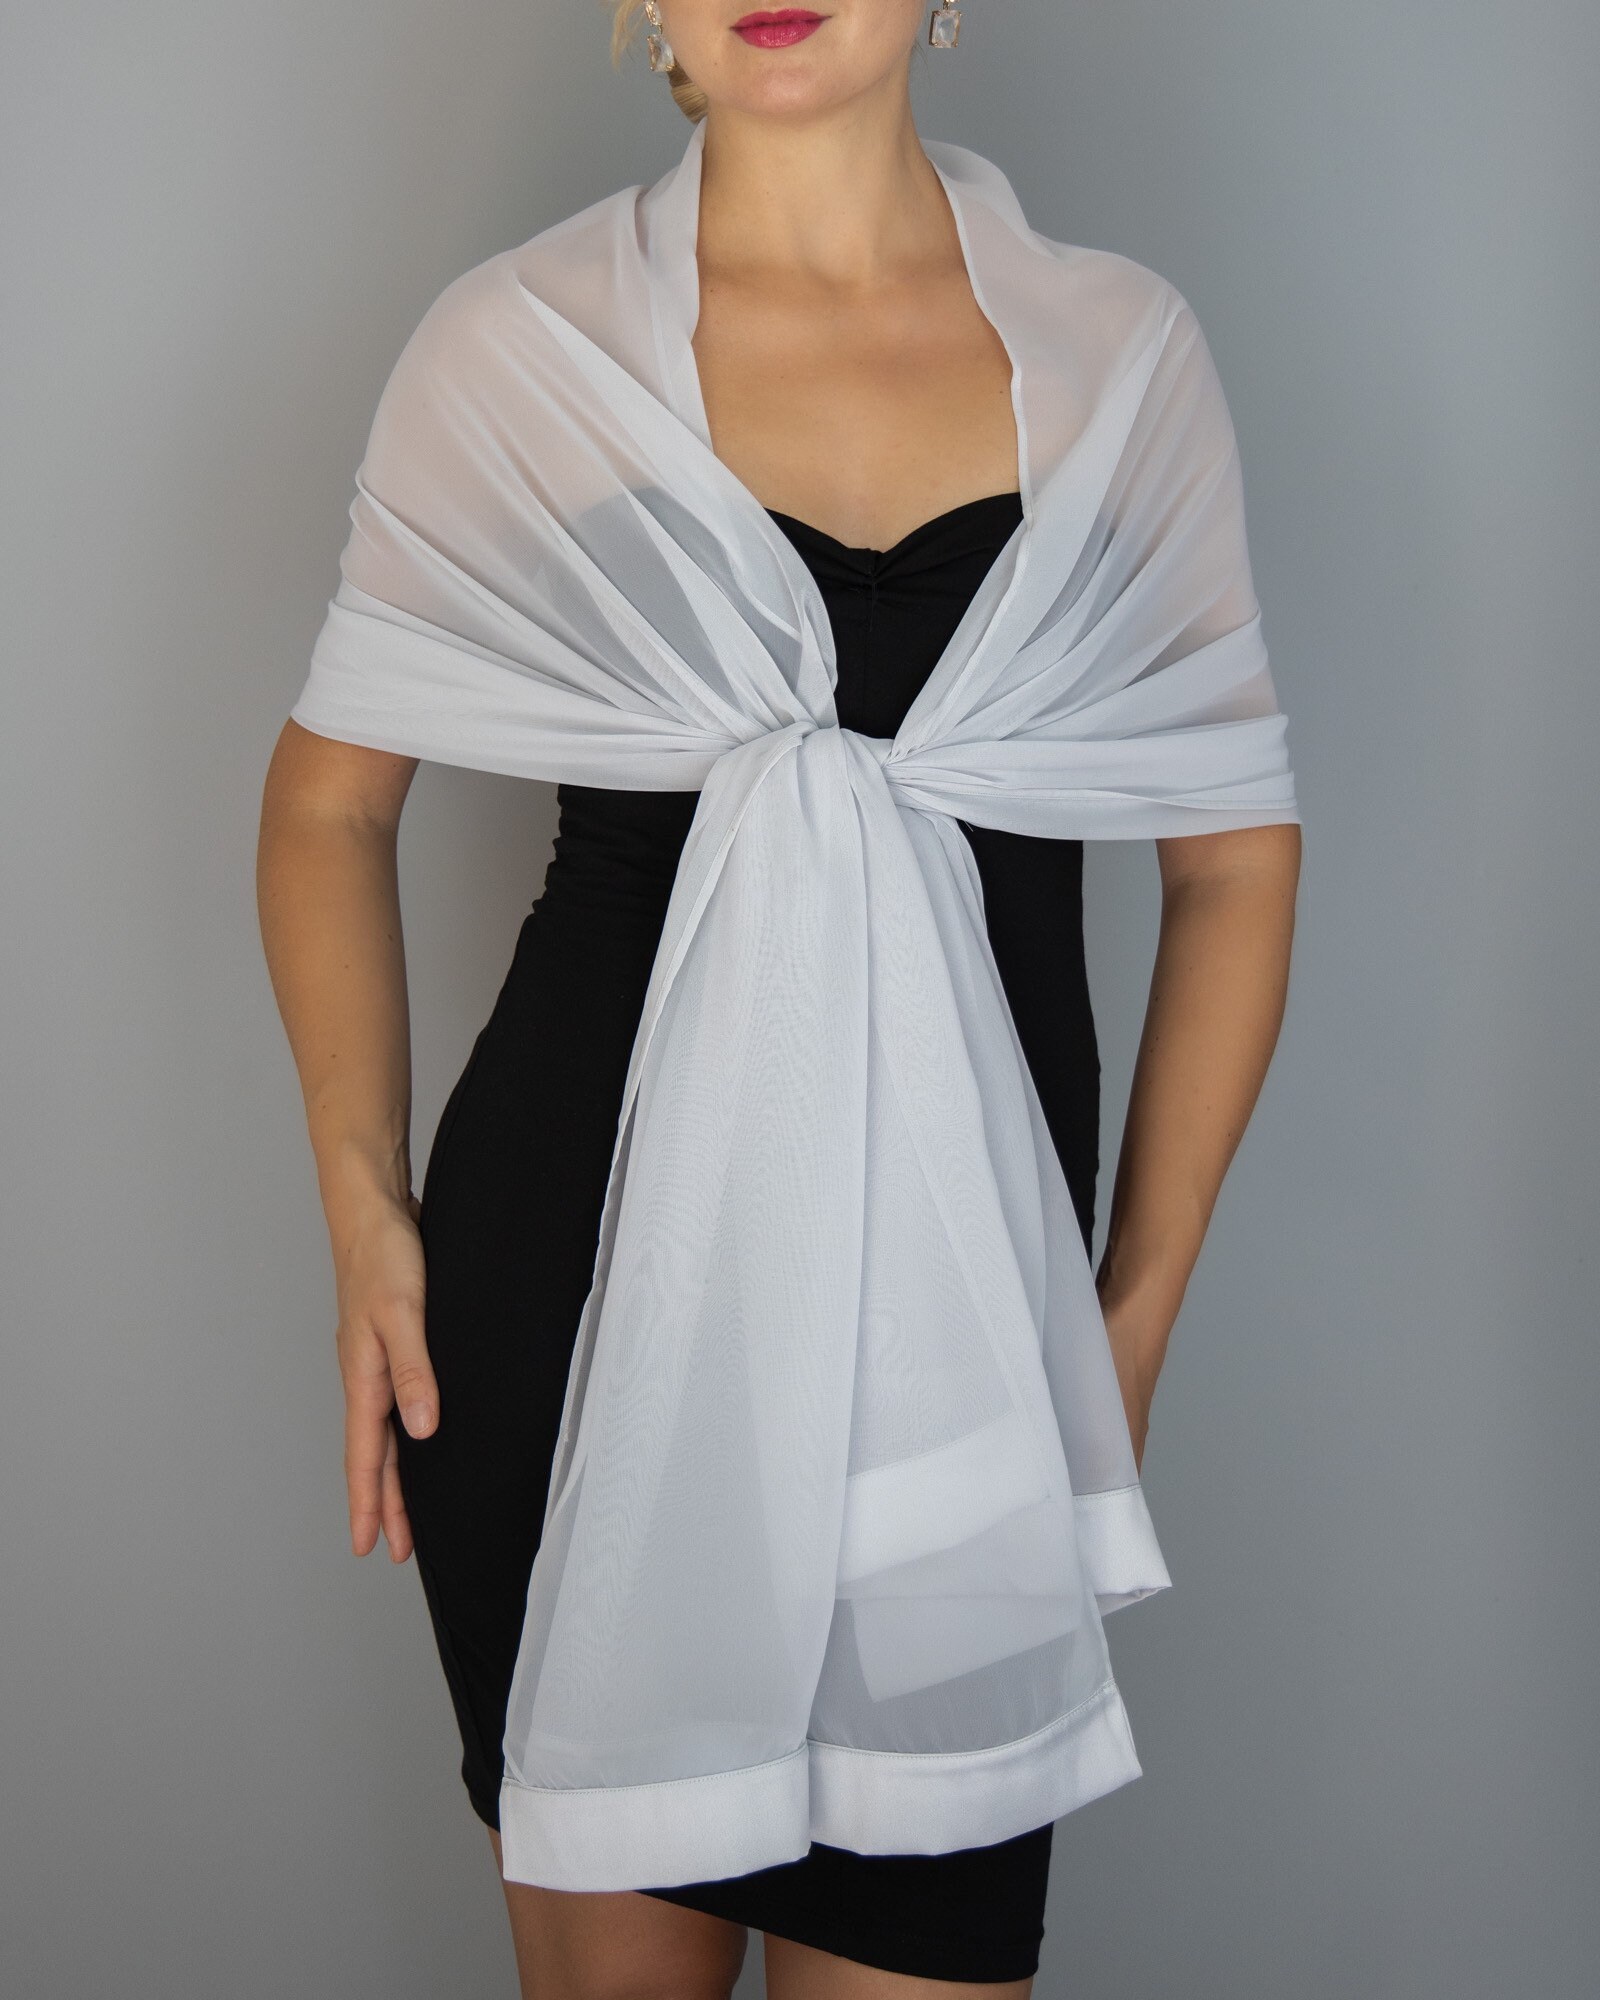 Matching set : bag and shawl wedding shrug elegant accessory | Etsy